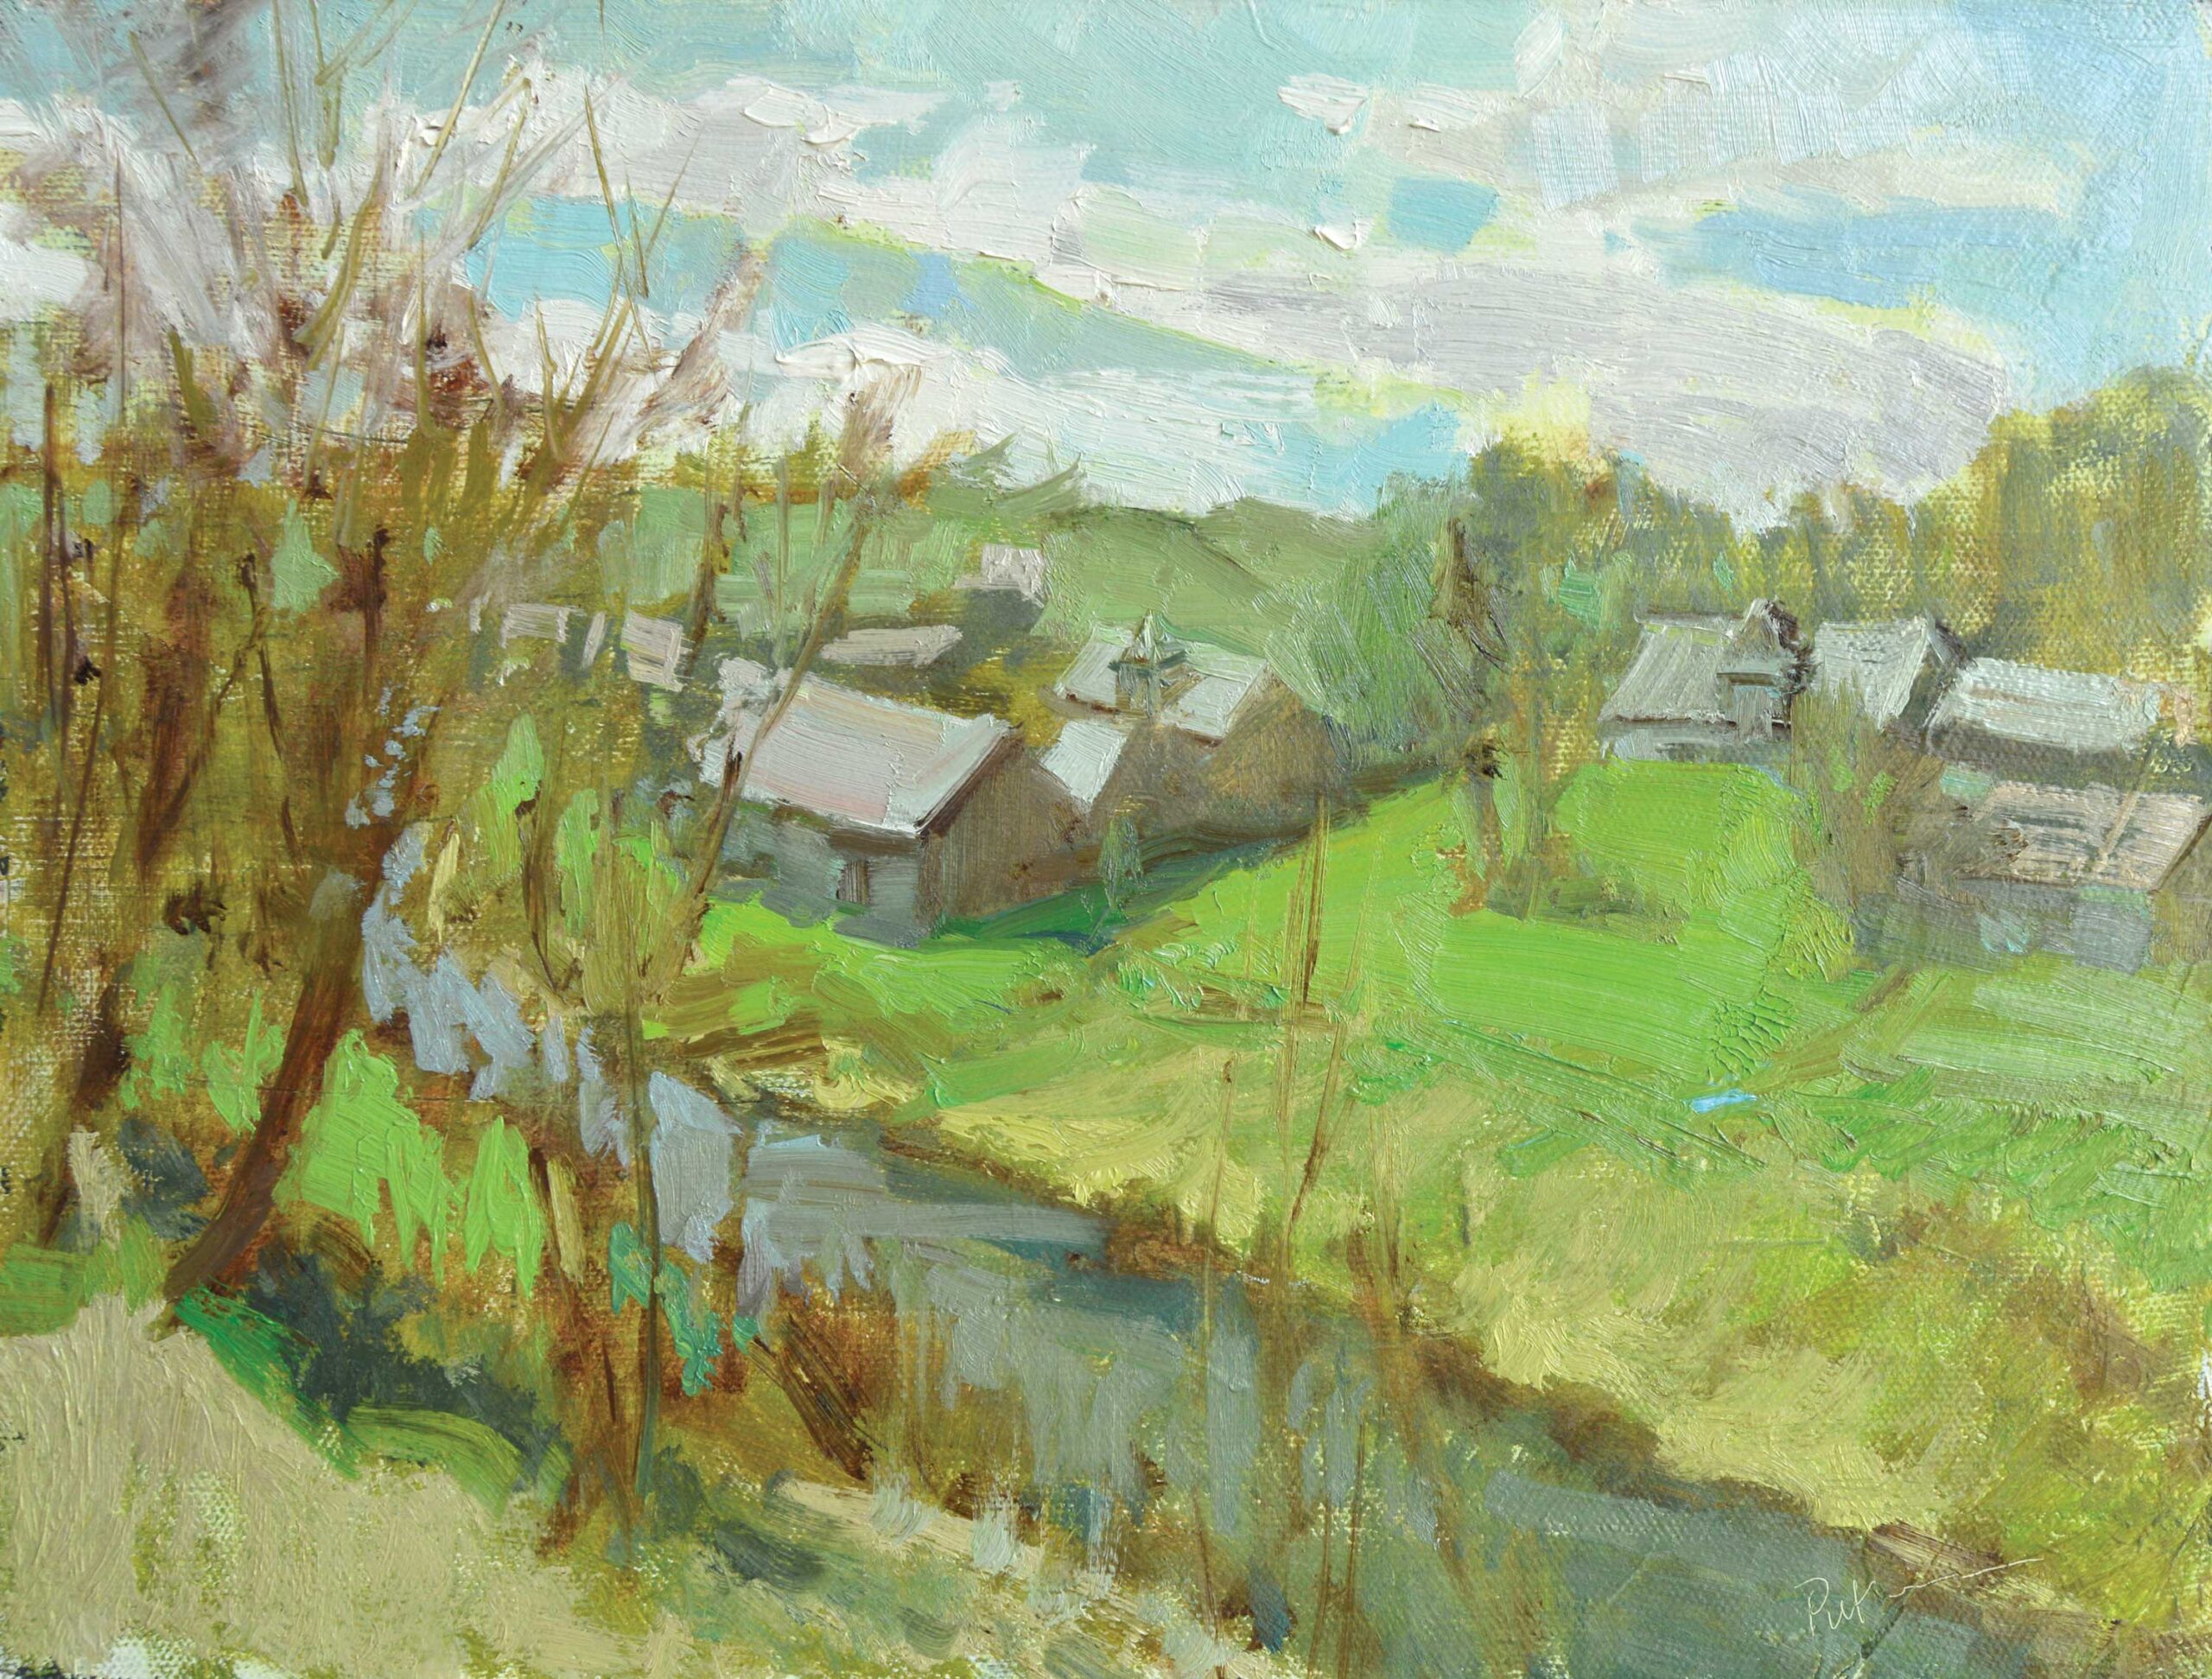 painting en plein air - Lori Putnam, "Spring in Ukraine," 2019, oil, 9x 72 in., Collection the artist, Plein air study